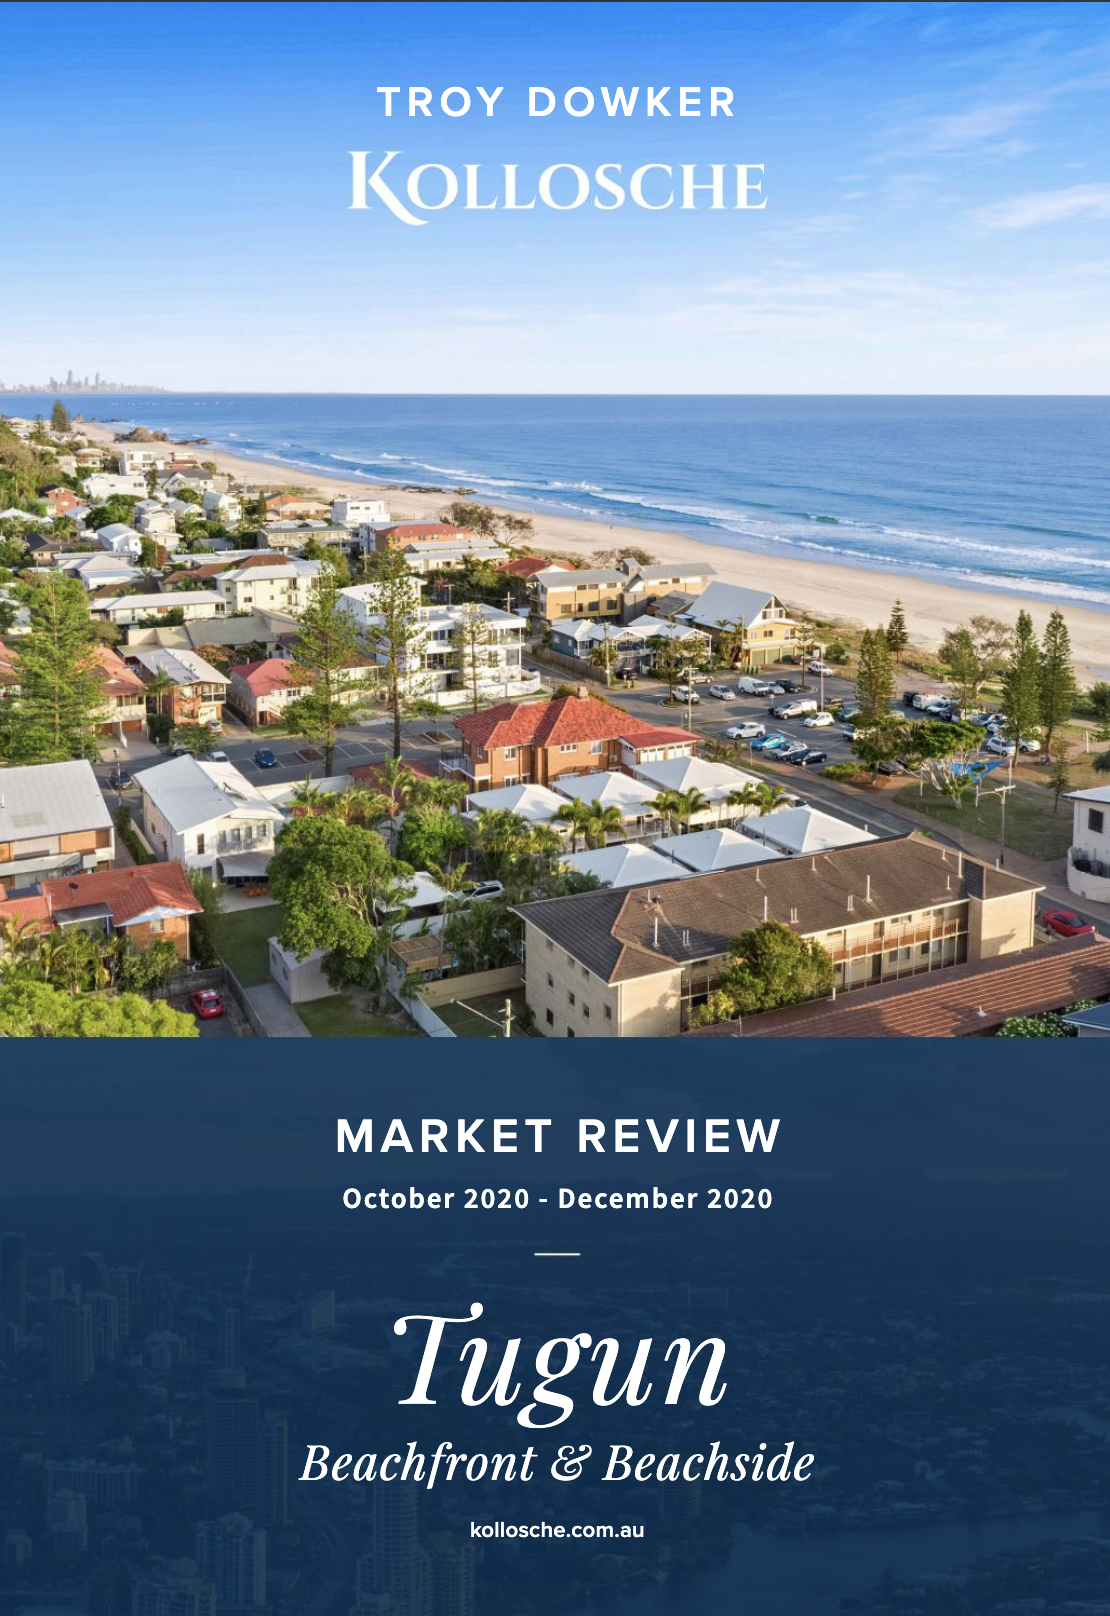 Tugun Market Review | October-December 2020 | Troy Dowker – Kollosche